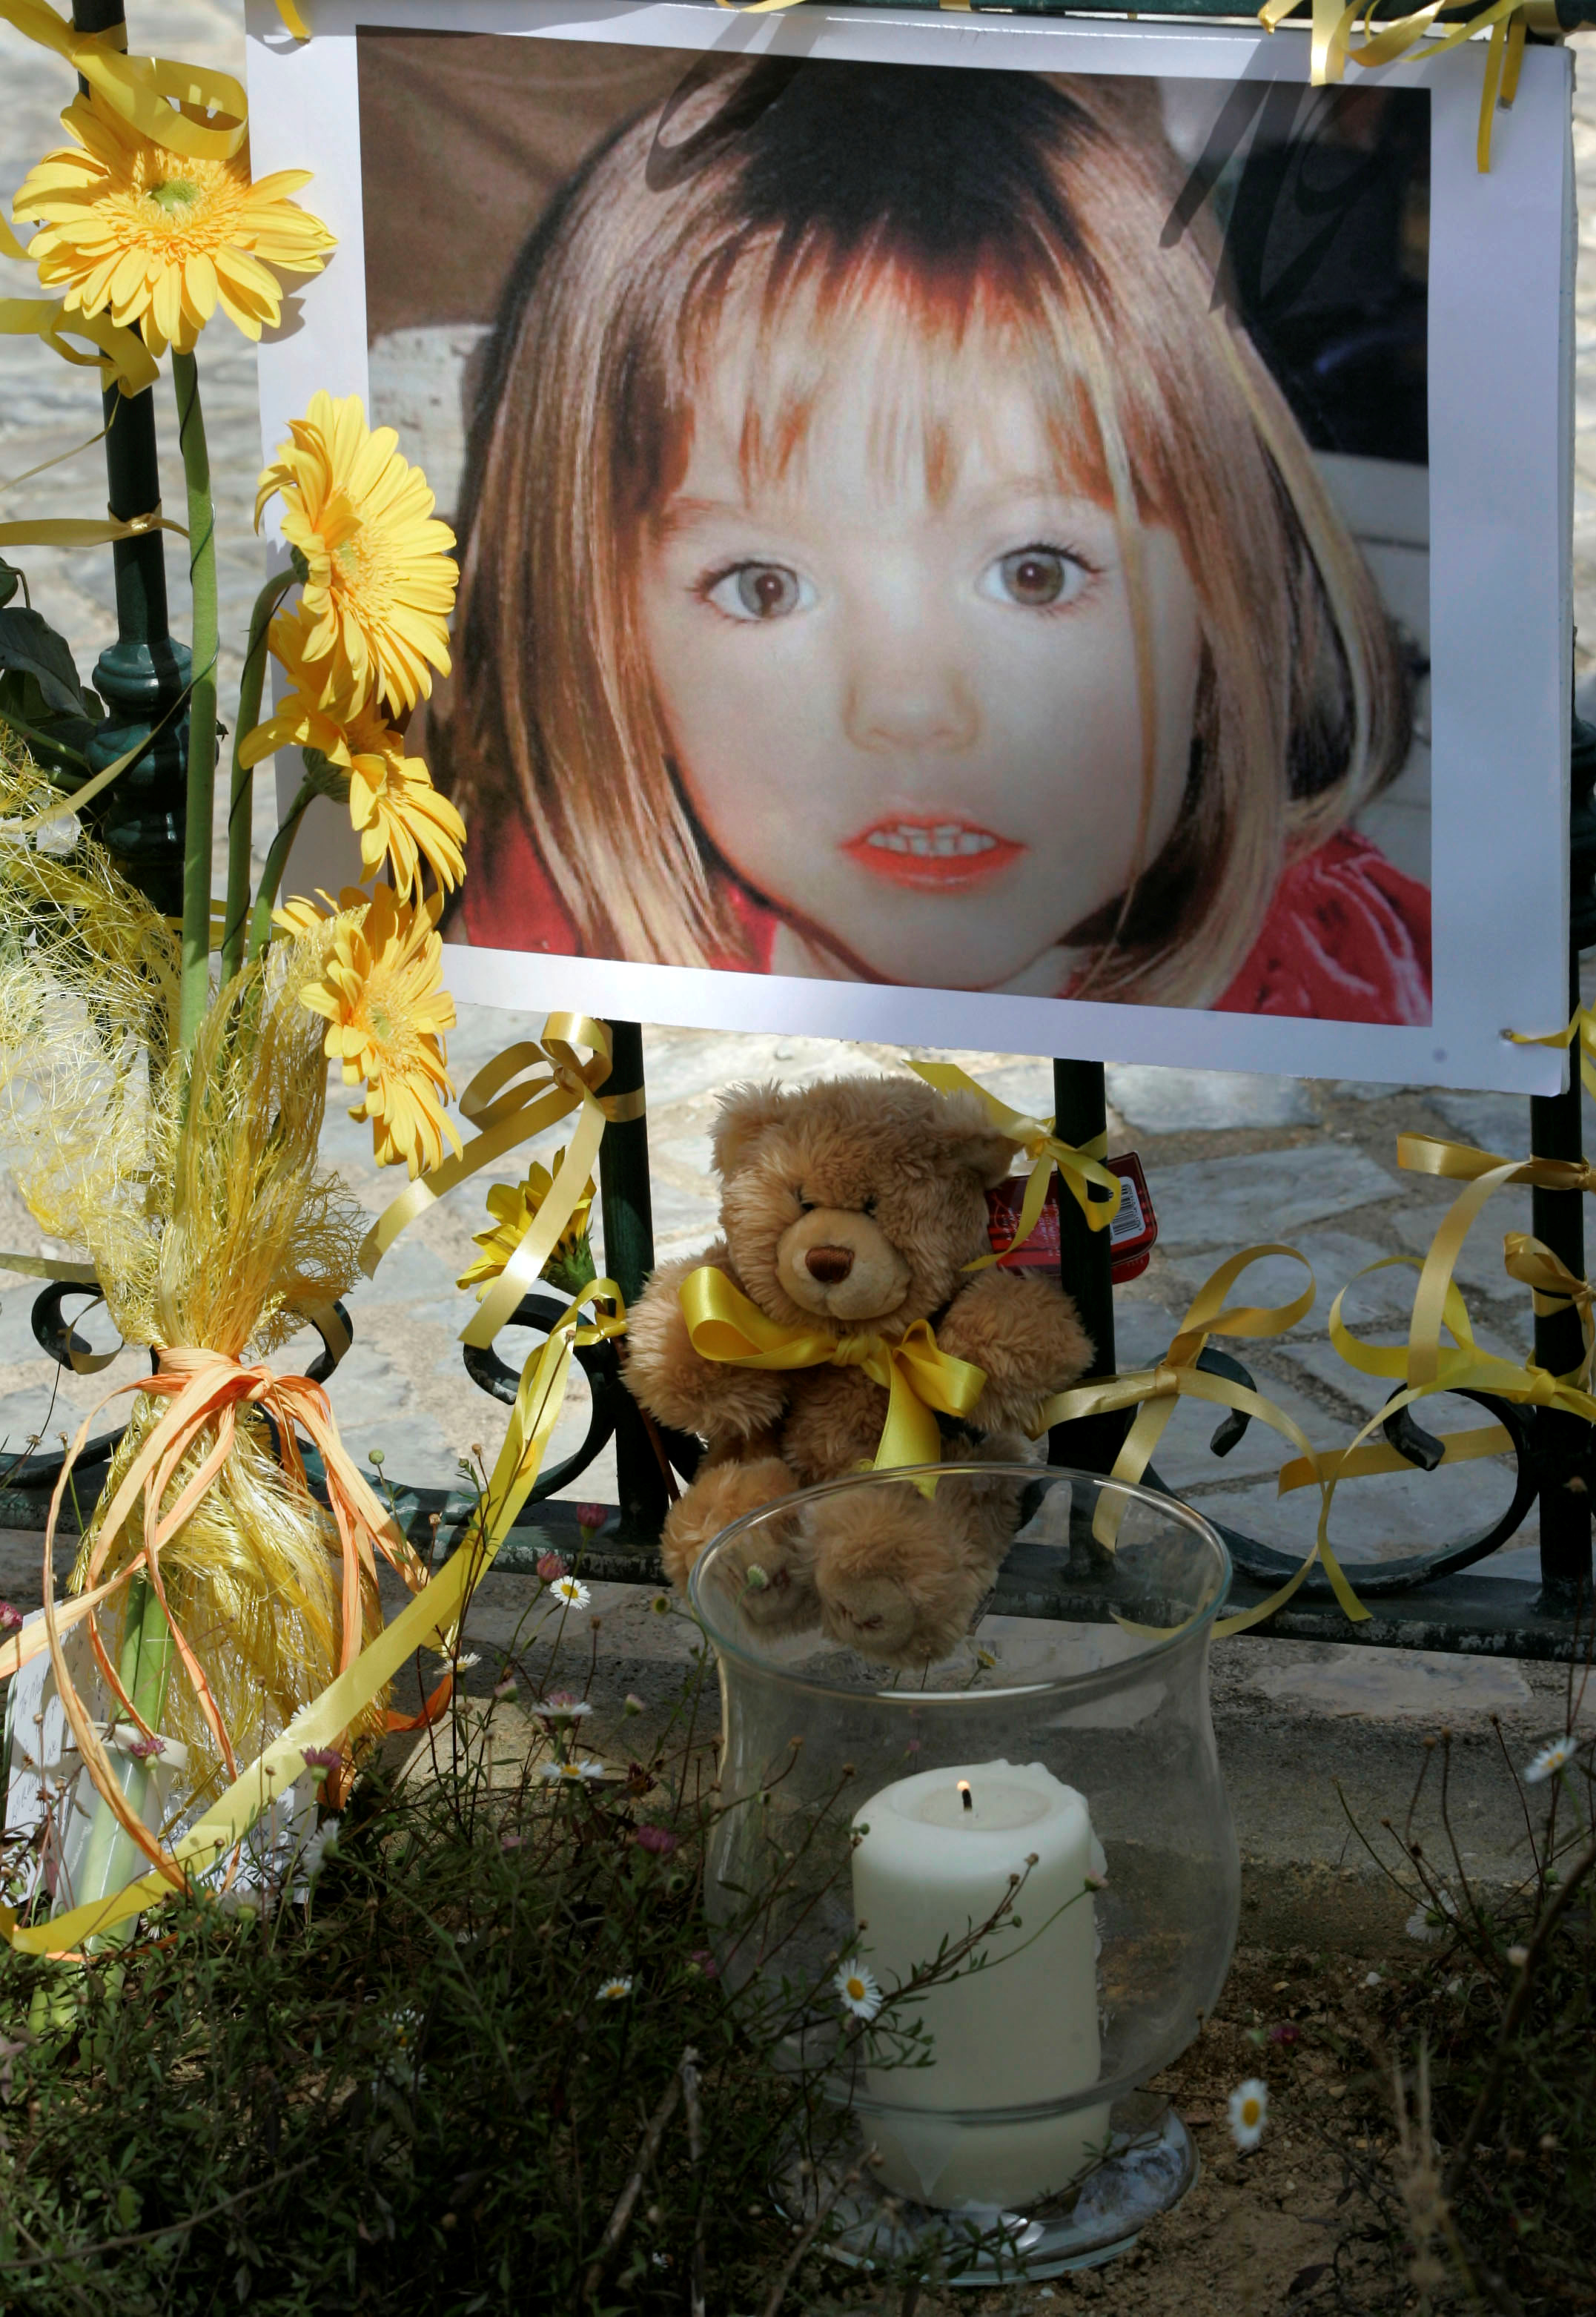 El póster de la niña británica de tres años desaparecida Madeleine McCann está rodeada de flores y arcos de esperanza en el balneario portugués de Lagos el 12 de mayo de 2007 )REUTERS/Hugo Correia/File Photo)